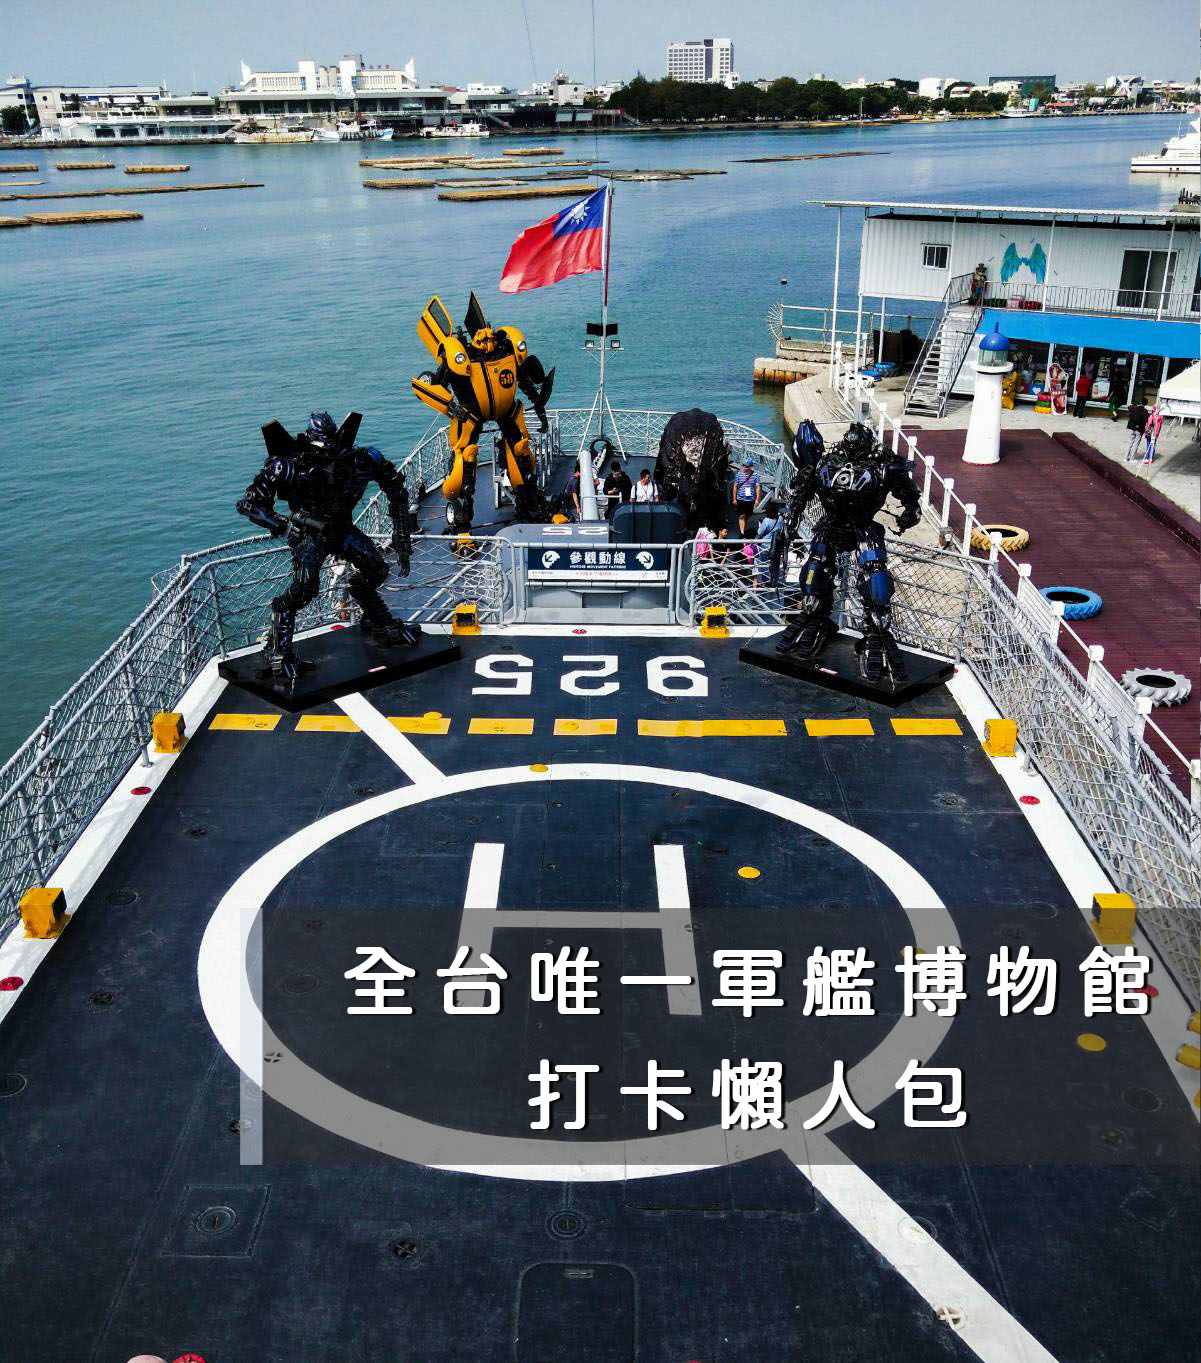 原為美國海軍基靈級戰艦在2005年退役後，經過台南市政府與各單位的努力，將德陽艦停靠於台南安平港，目前以園區的方式開放參觀，也是目前僅存的一艘陽宇號軍艦。從軍艦本身就可以看到非常多歷史的痕跡與故事，這次結合期間限定「鋼鐵機器人」（到2021年6月27日）營造出電影中才會出現的場景氛圍，值得利用假期到這裡走一走。